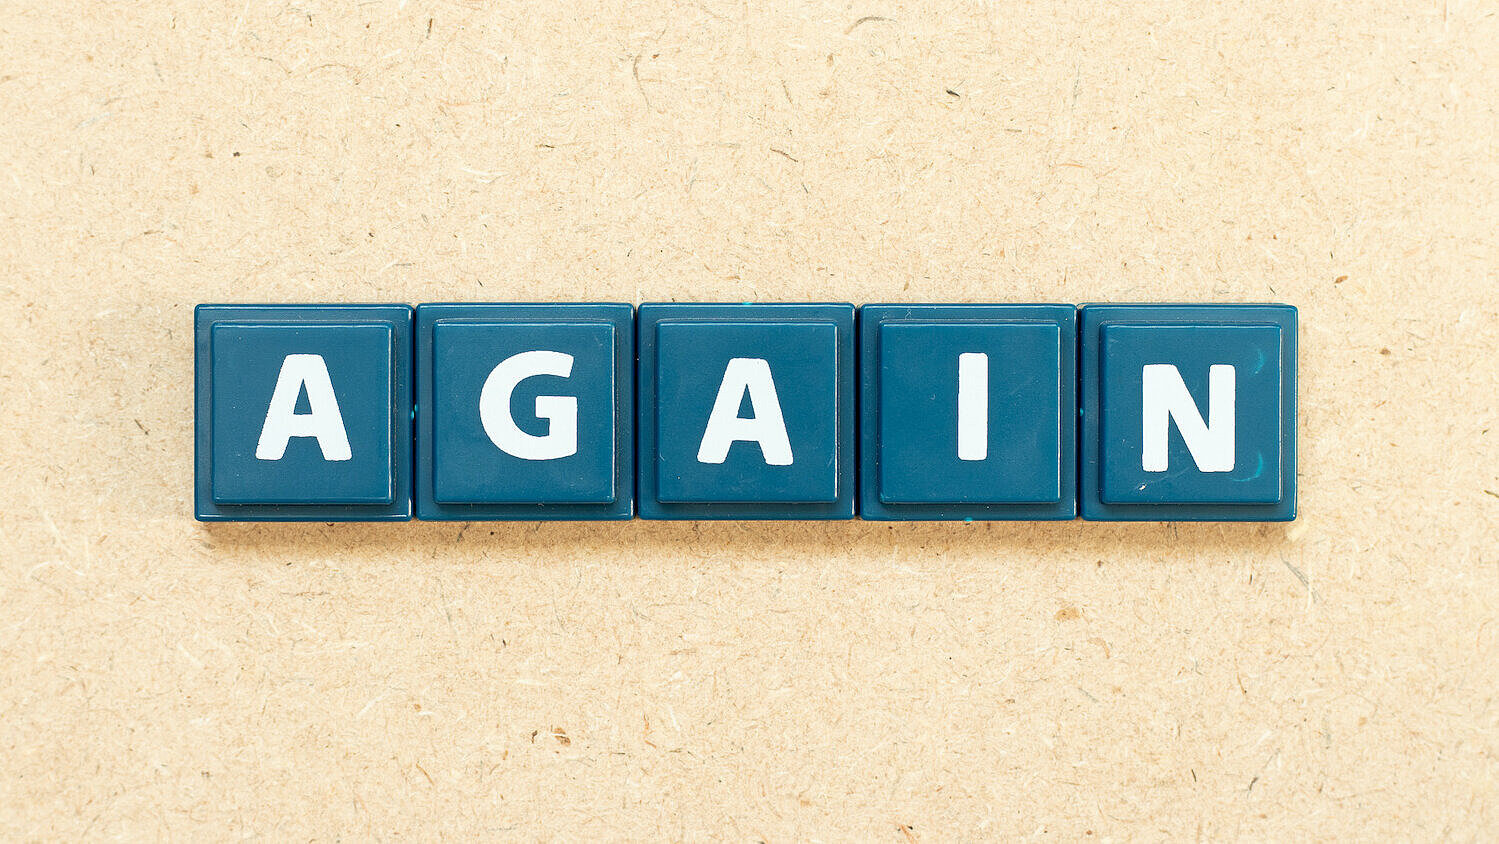 Das englische Wort "again" ist in Kachelbuchstaben auf einem hölzernen Hintergrund dargestellt.